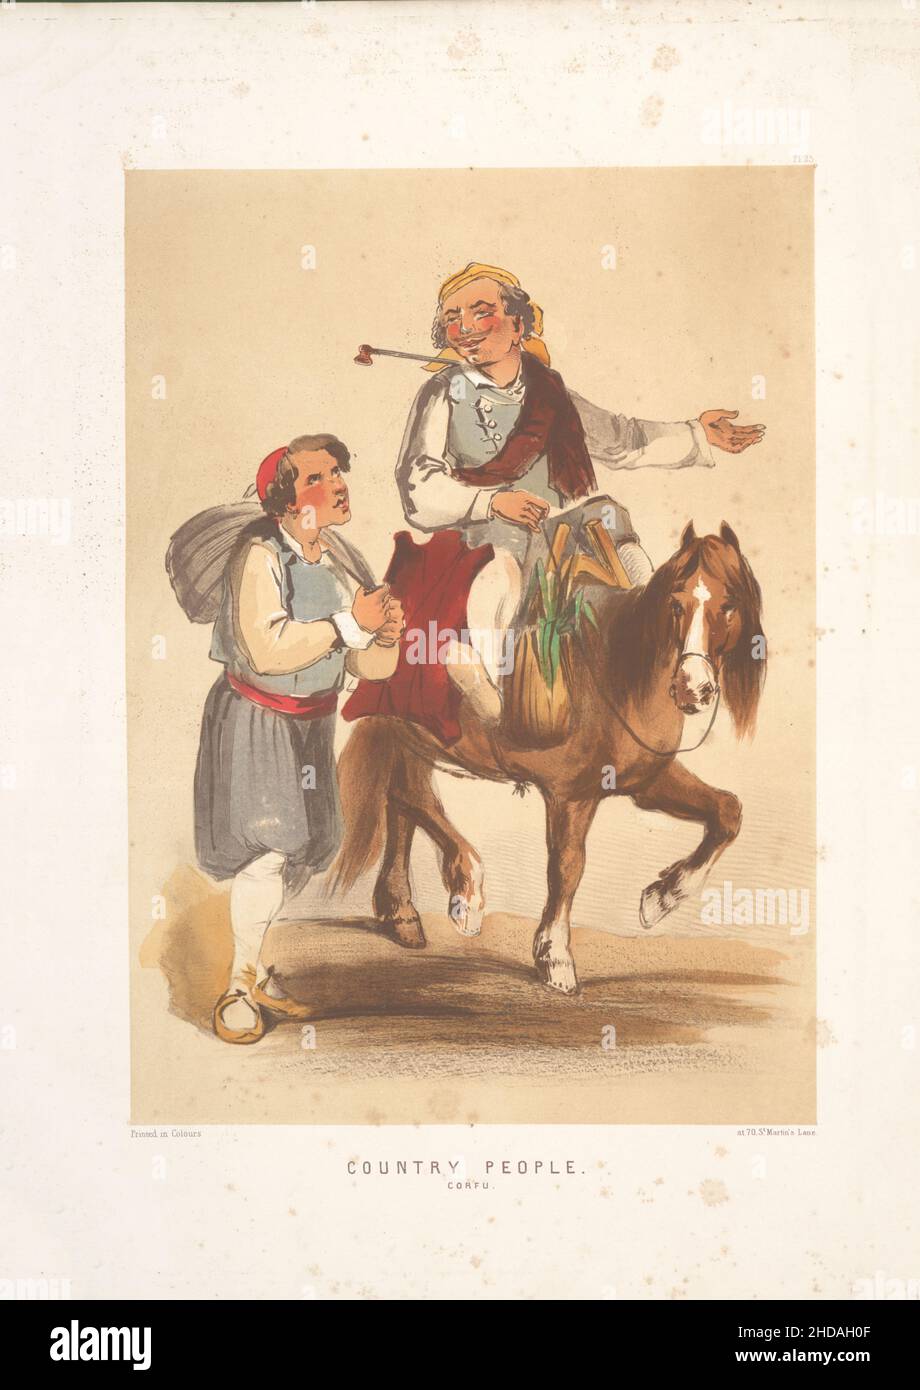 Lithographie de couleur vintage de l'Empire ottoman: Country People, Corfou 1854, par Forbes Mac Bean (artiste) et Justin Sutcliffe (lithographe) Banque D'Images